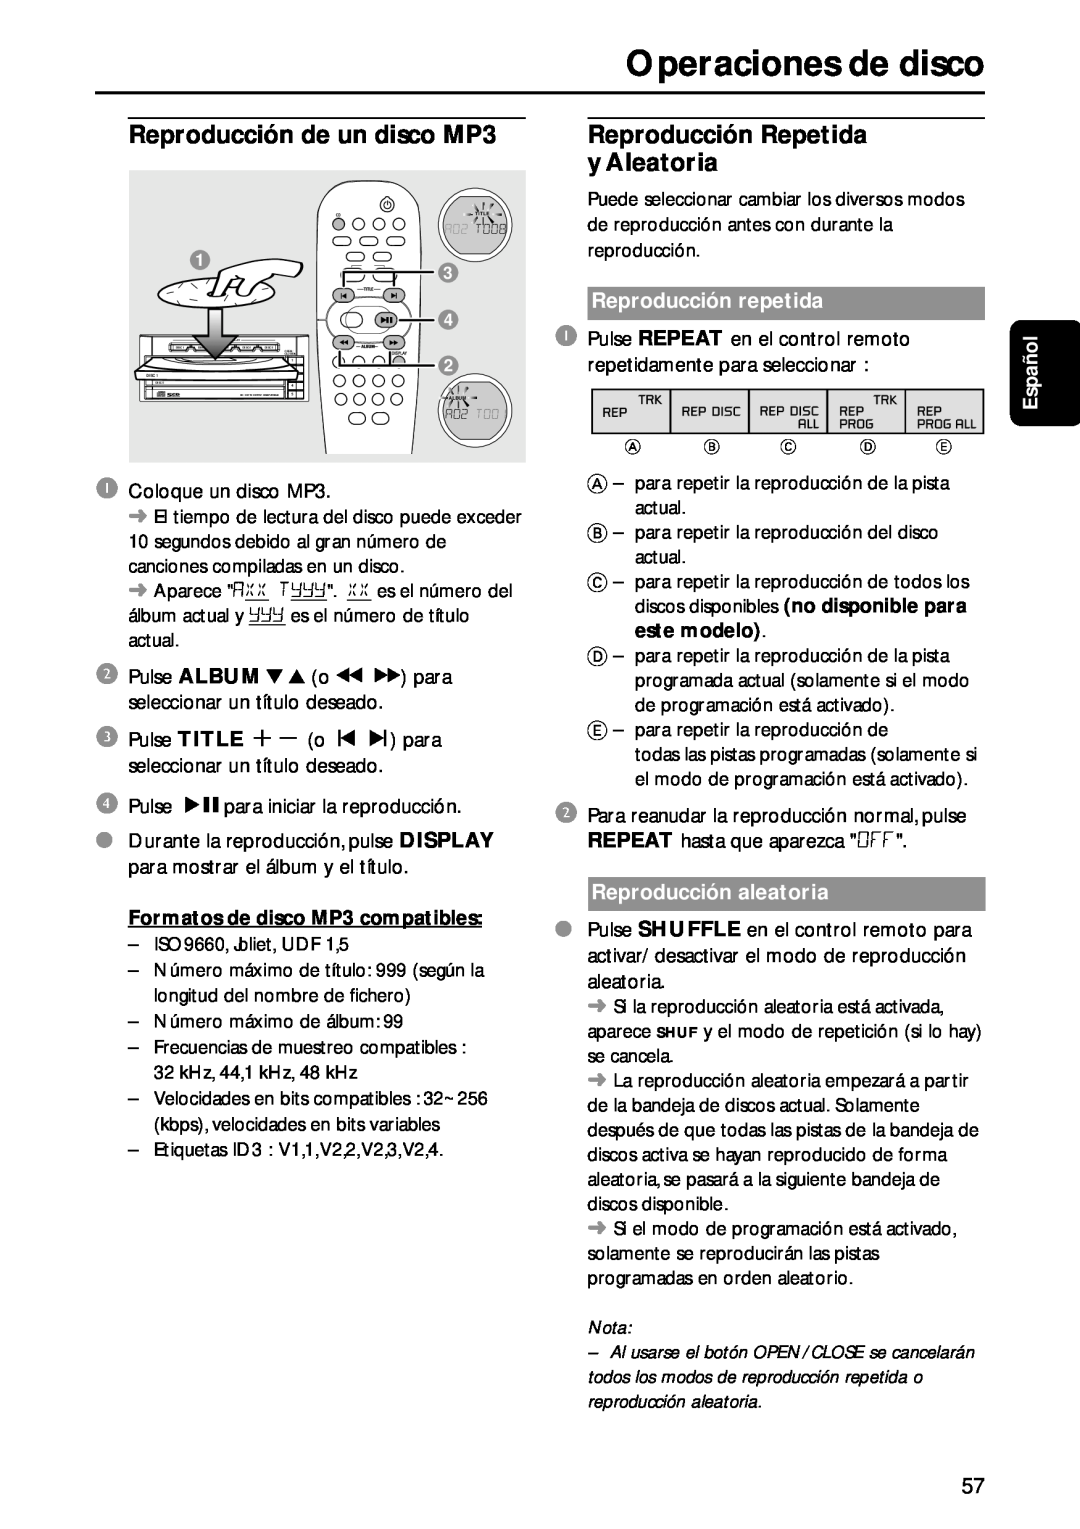 Philips MC-M570 manual Operaciones de disco, Reproducción repetida, Español, Formatos de disco MP3 compatibles, Nota 